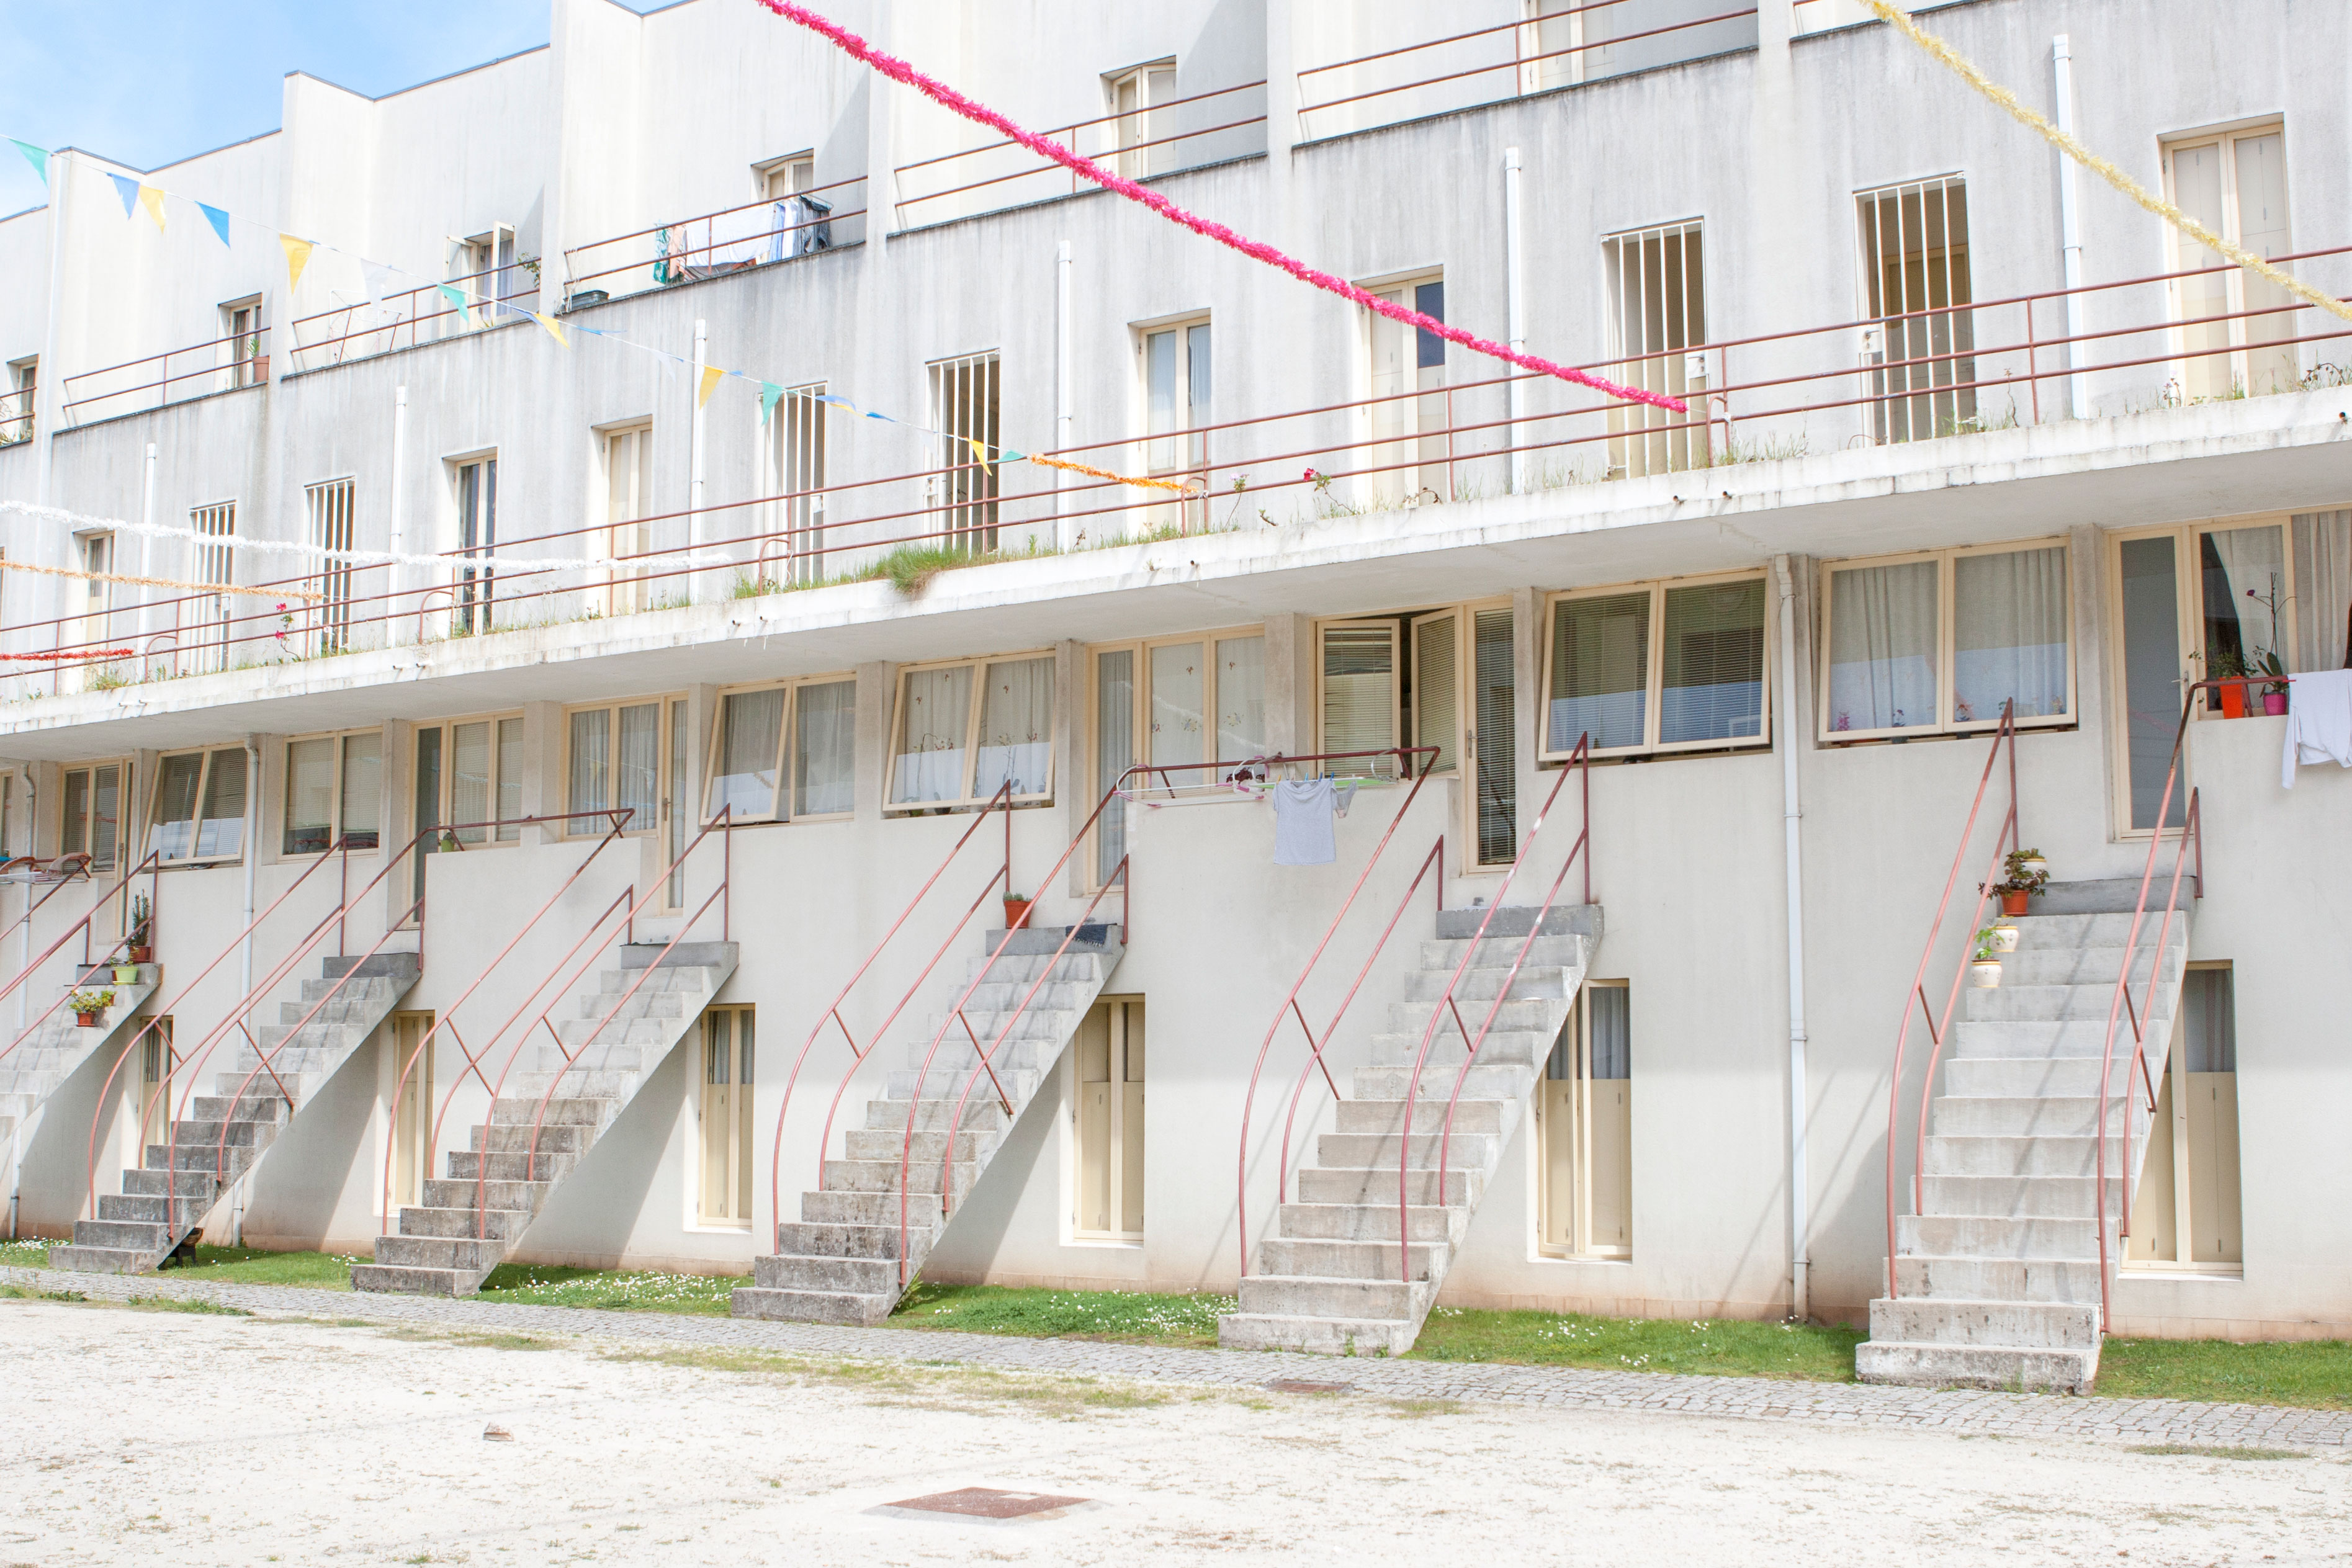 Bouca Social Housing in Porto by Álvaro Siza Vieira #architecture